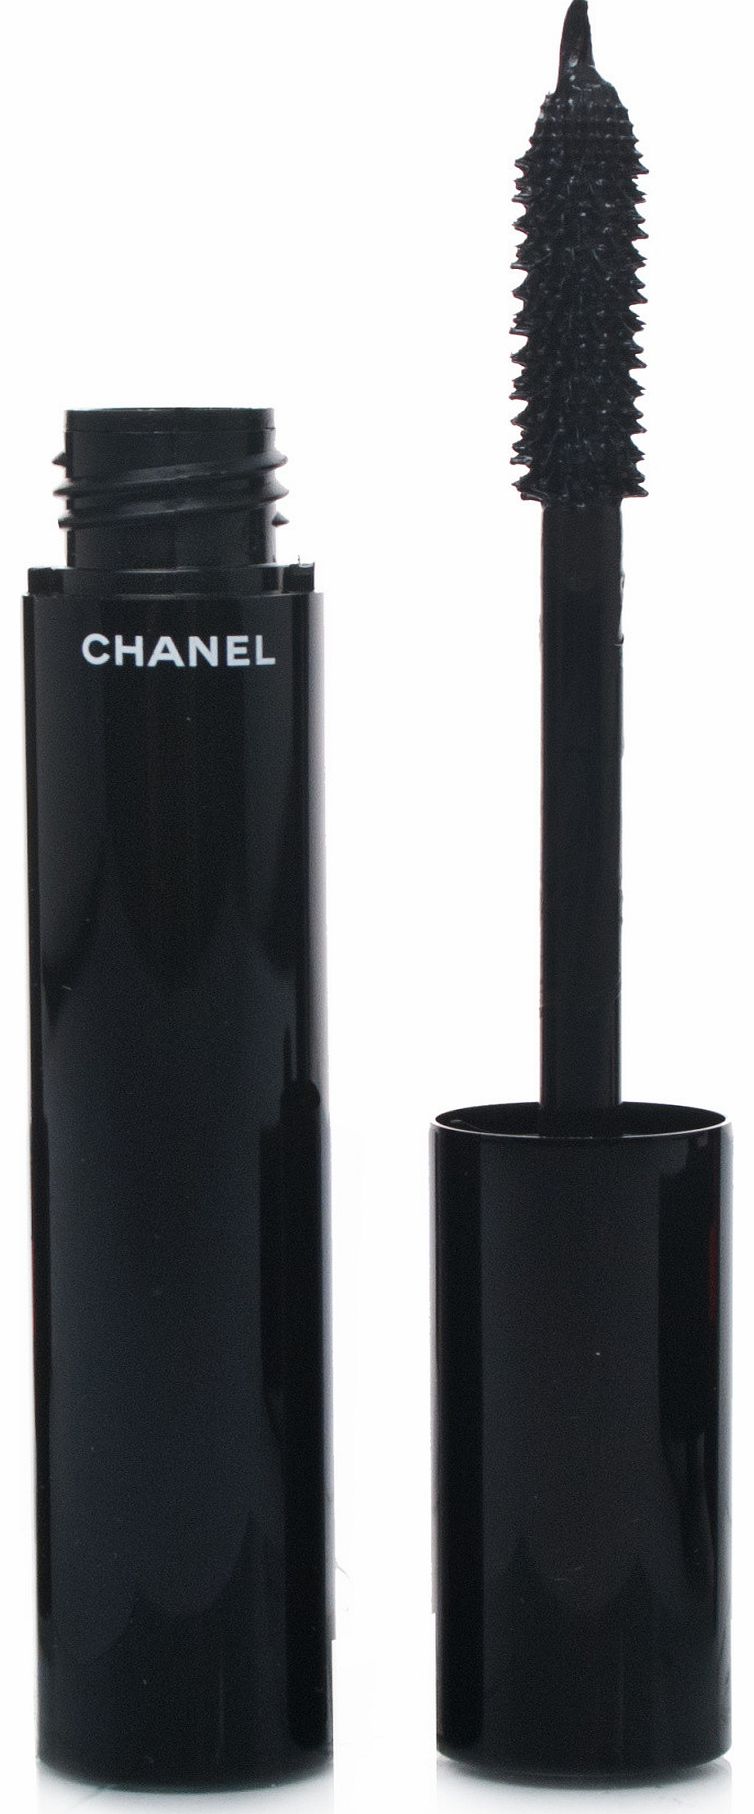 Le Volume de Chanel Mascara Noir